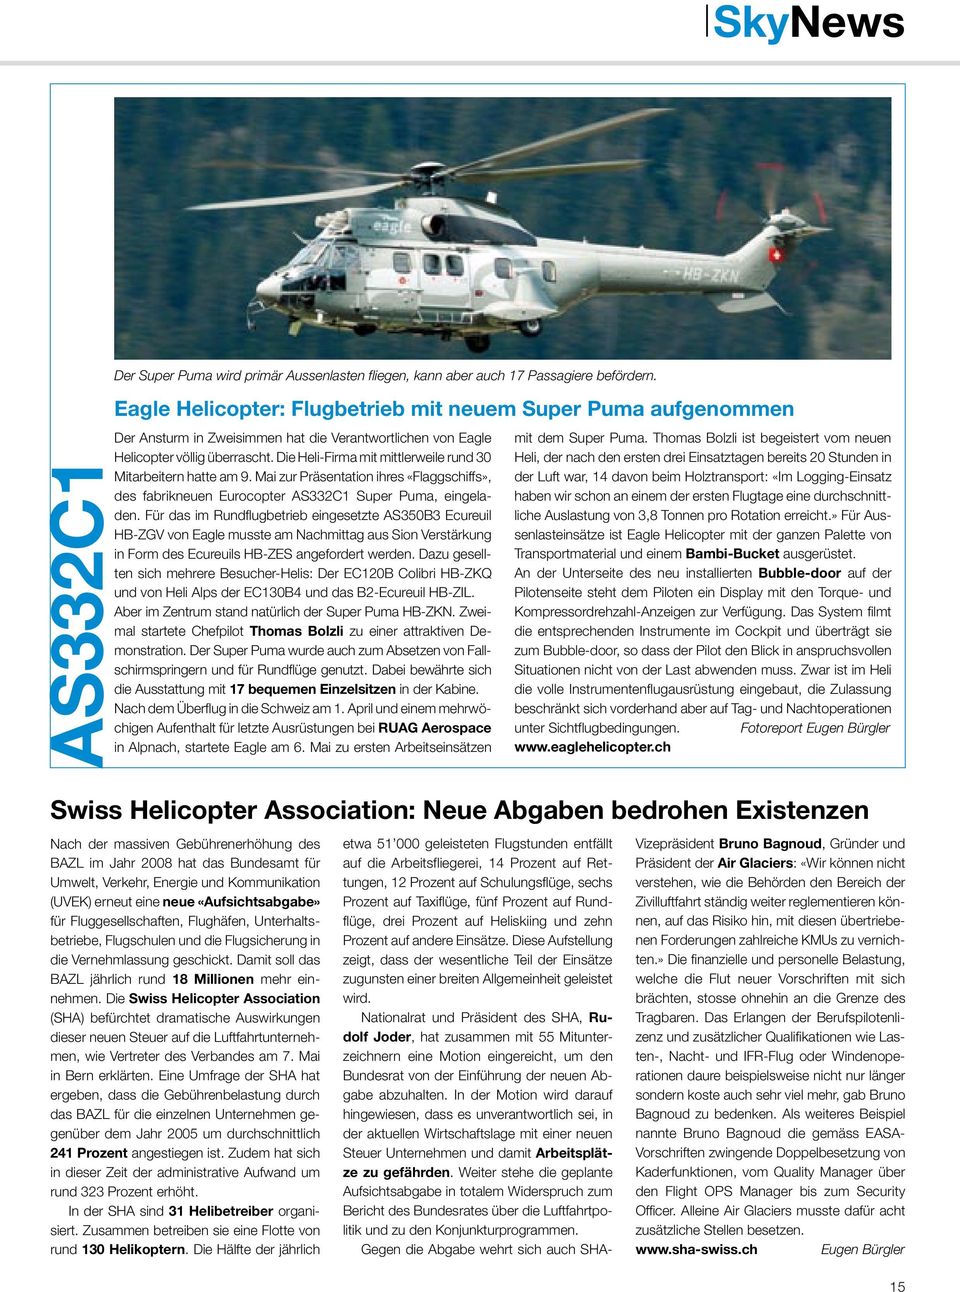 Die Heli-Firma mit mittlerweile rund 30 Mitarbeitern hatte am 9. Mai zur Präsentation ihres «Flaggschiffs», des fabrikneuen Eurocopter AS332C1 Super Puma, eingeladen.